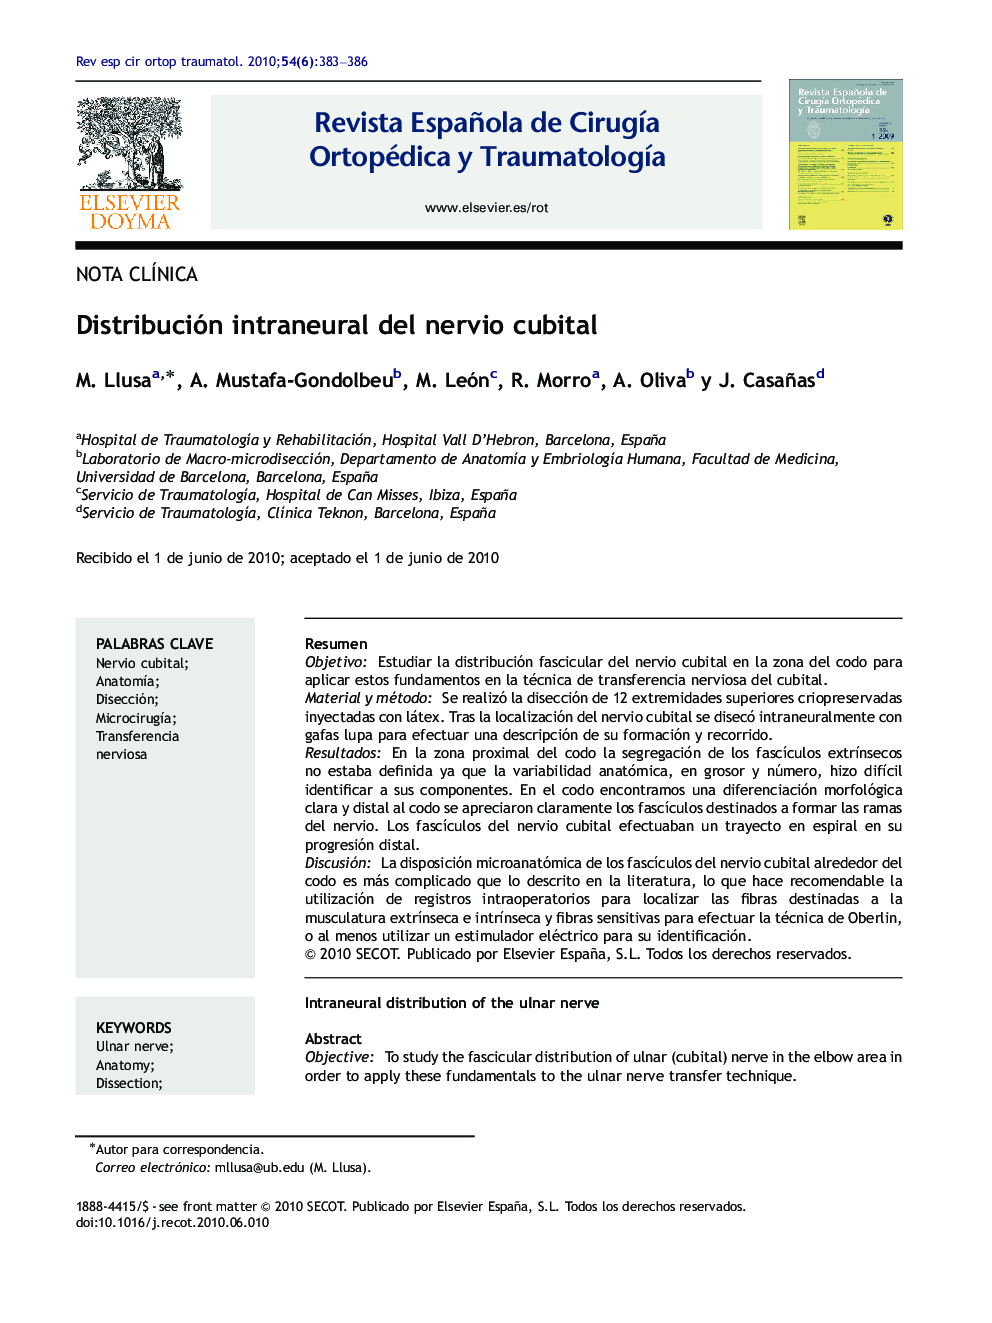 Distribución intraneural del nervio cubital